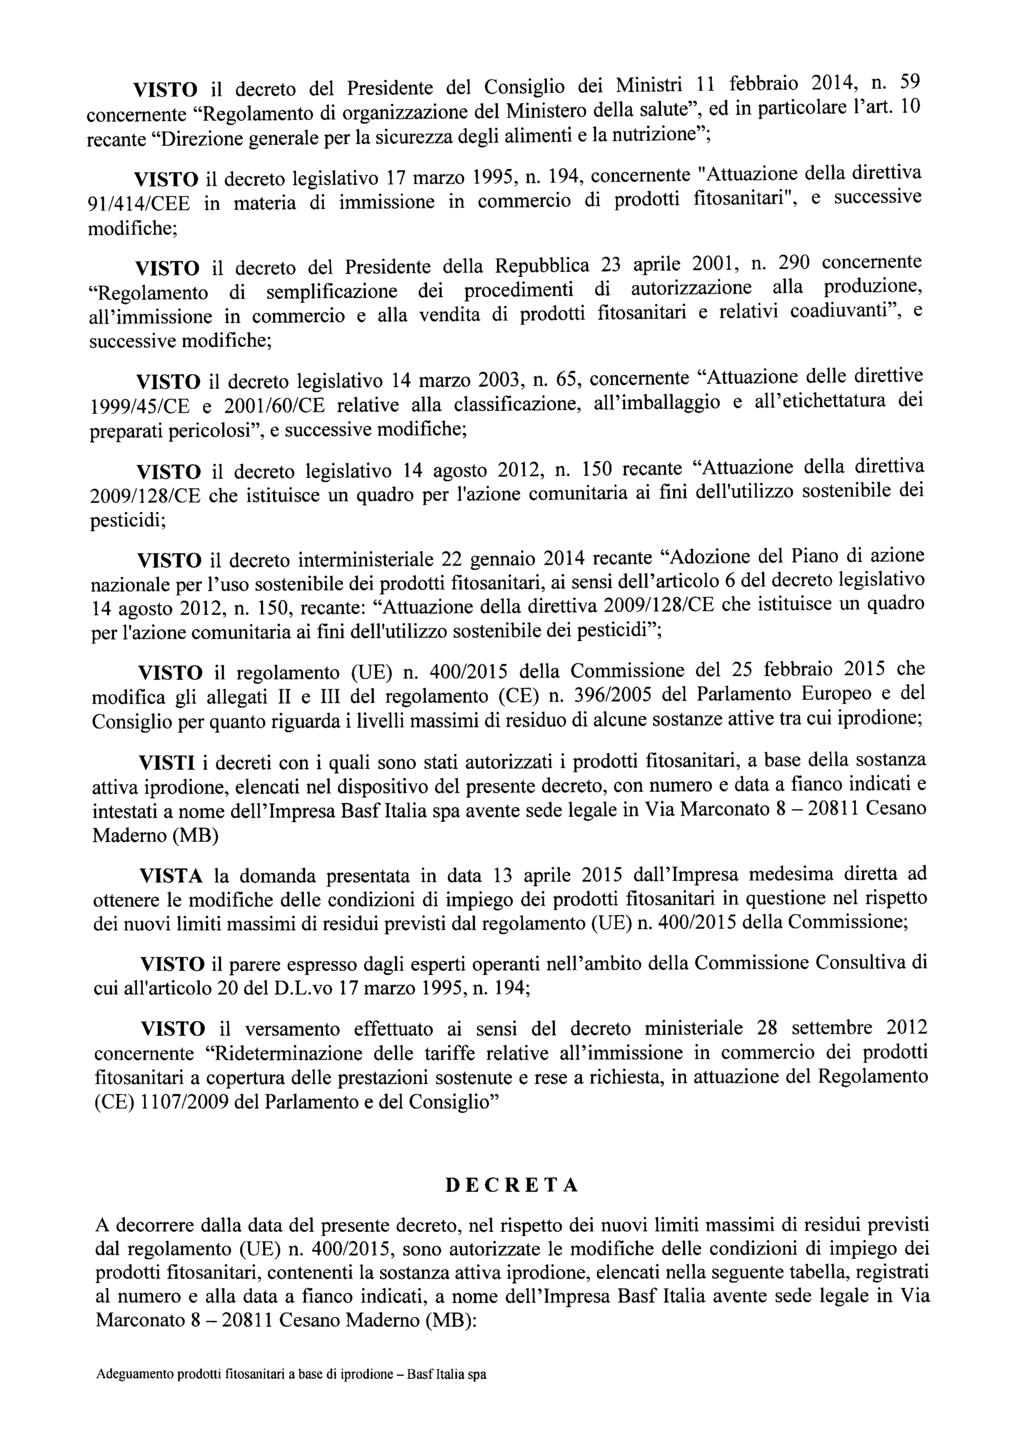 VISTO il decreto del Presidente del Consiglio dei Ministri 11 febbraio 2014, n. 59 concernente "Regolamento di organizzazione del Ministero della salute", ed in particolare l'art.